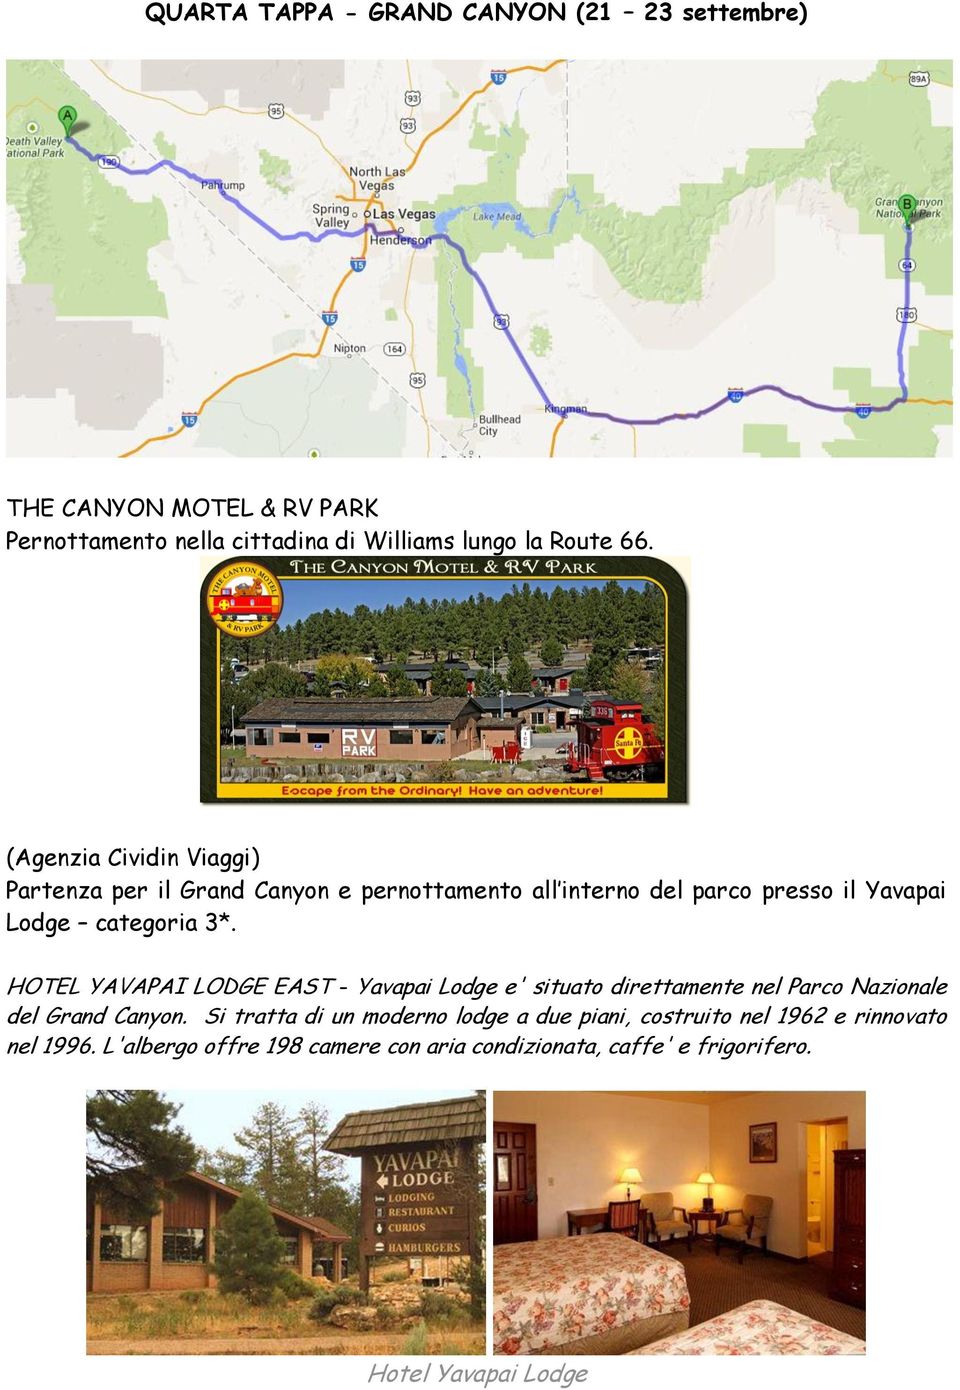 HOTEL YAVAPAI LODGE EAST - Yavapai Lodge e' situato direttamente nel Parco Nazionale del Grand Canyon.